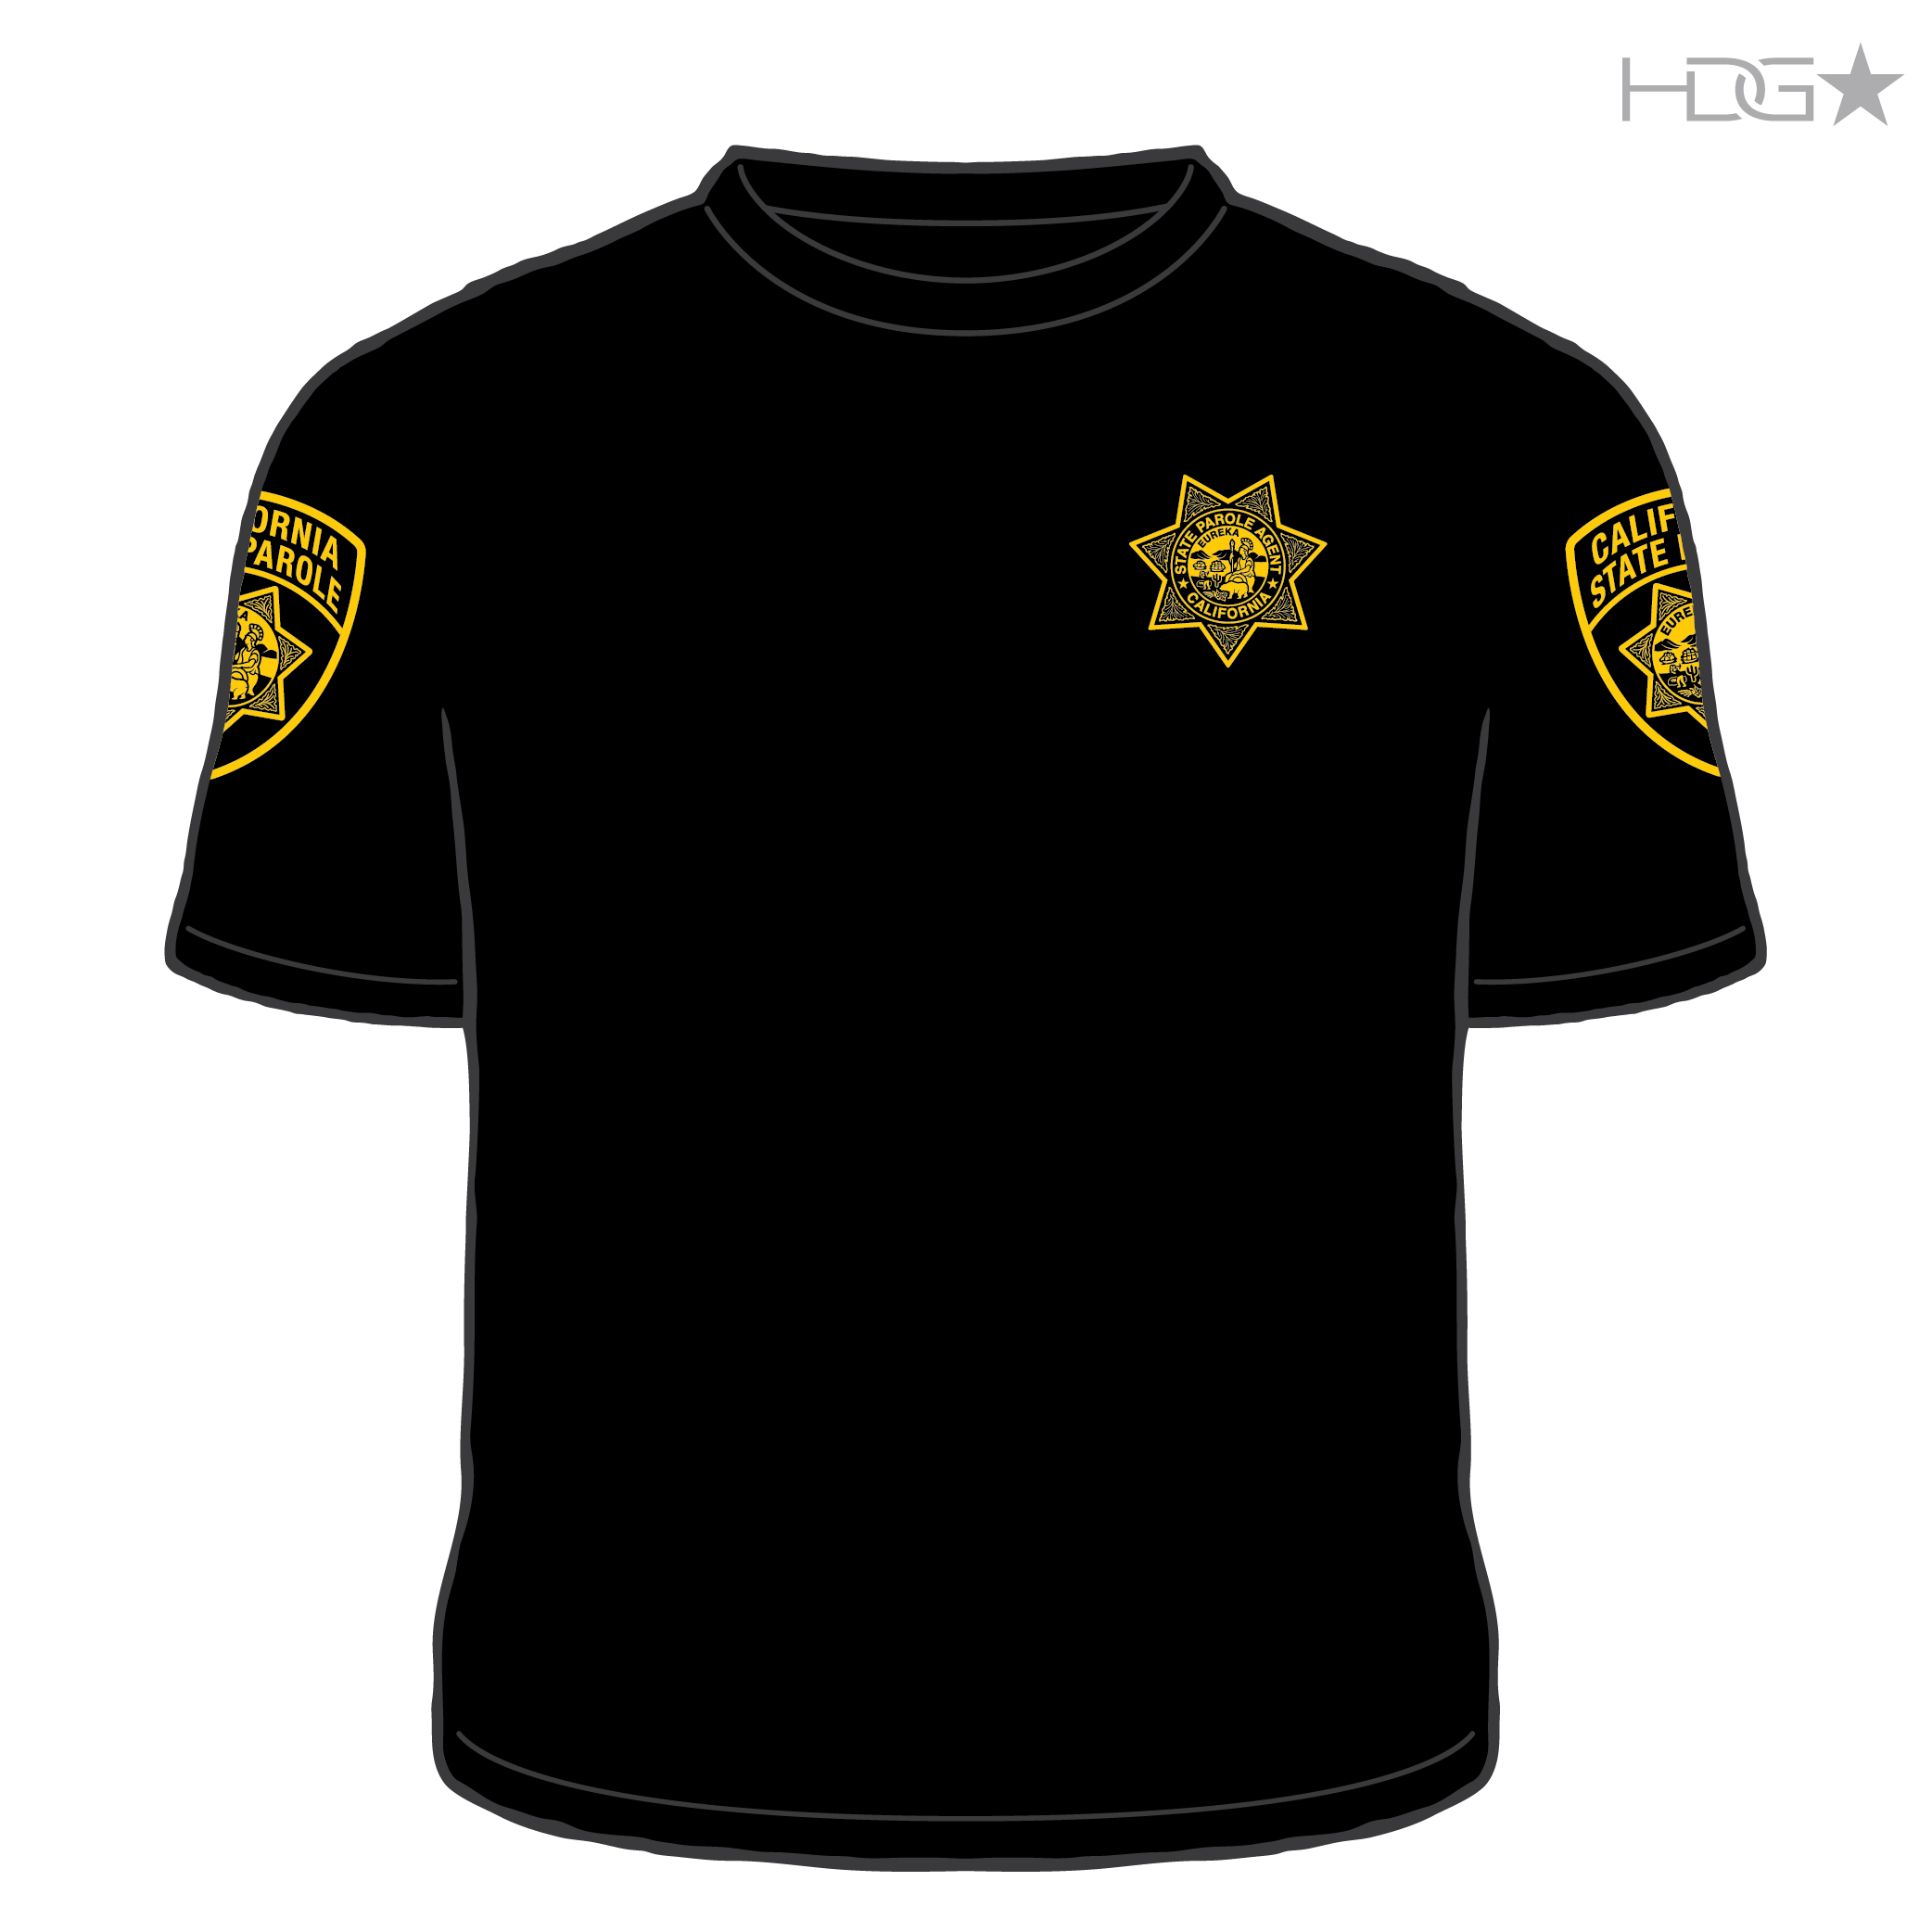 California Parole Agent Black T Shirt New Hdg Tactical